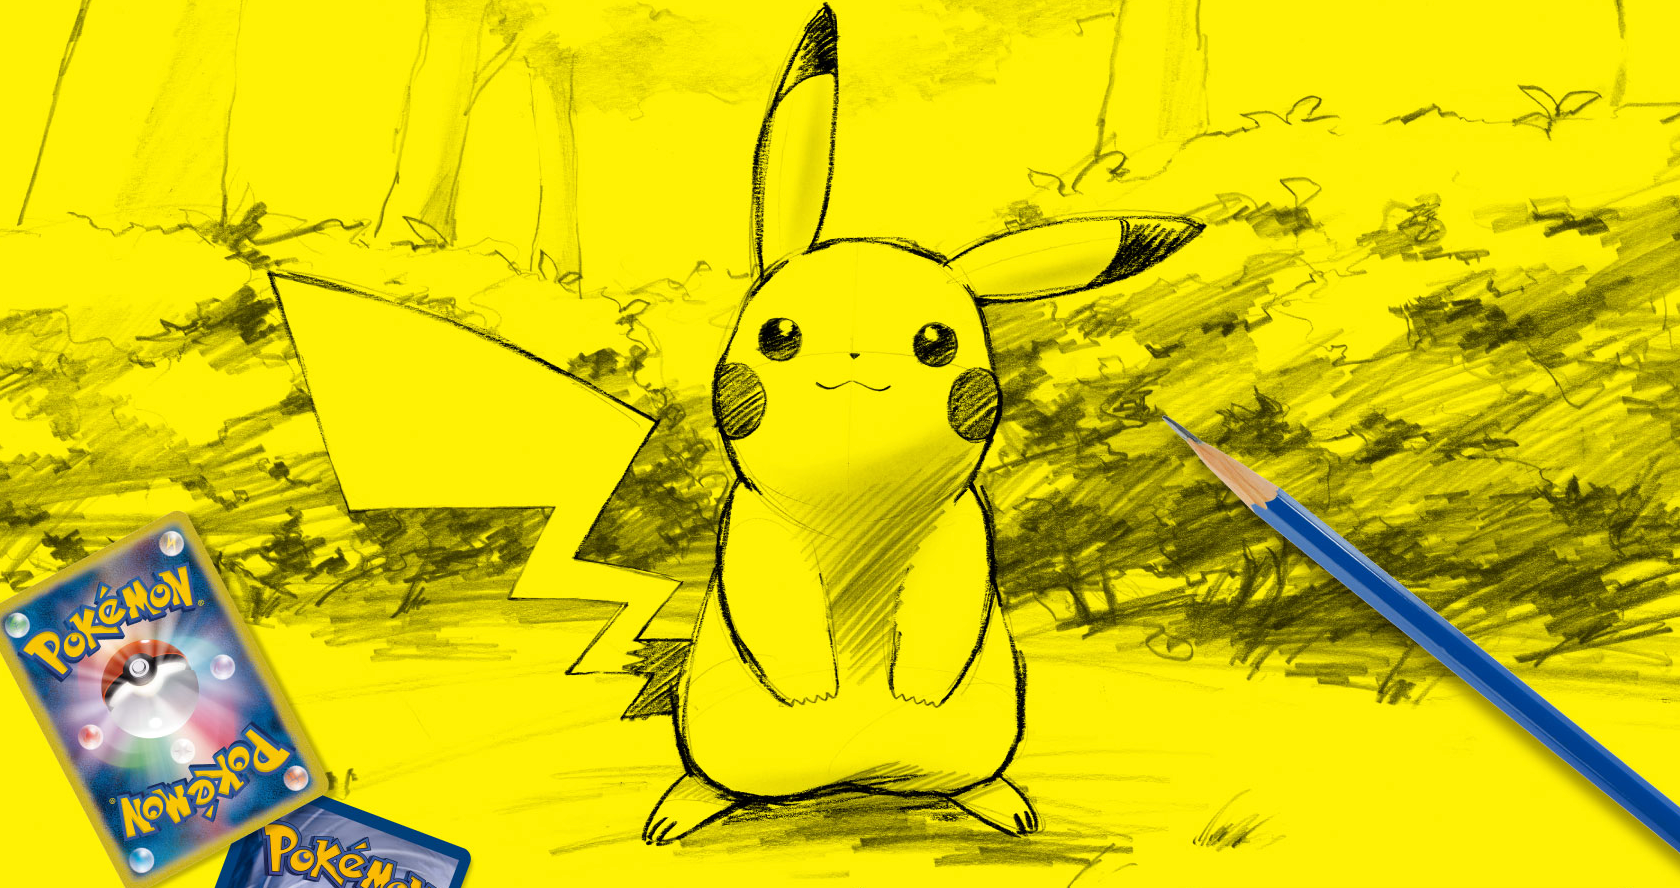 Pikachu sketch